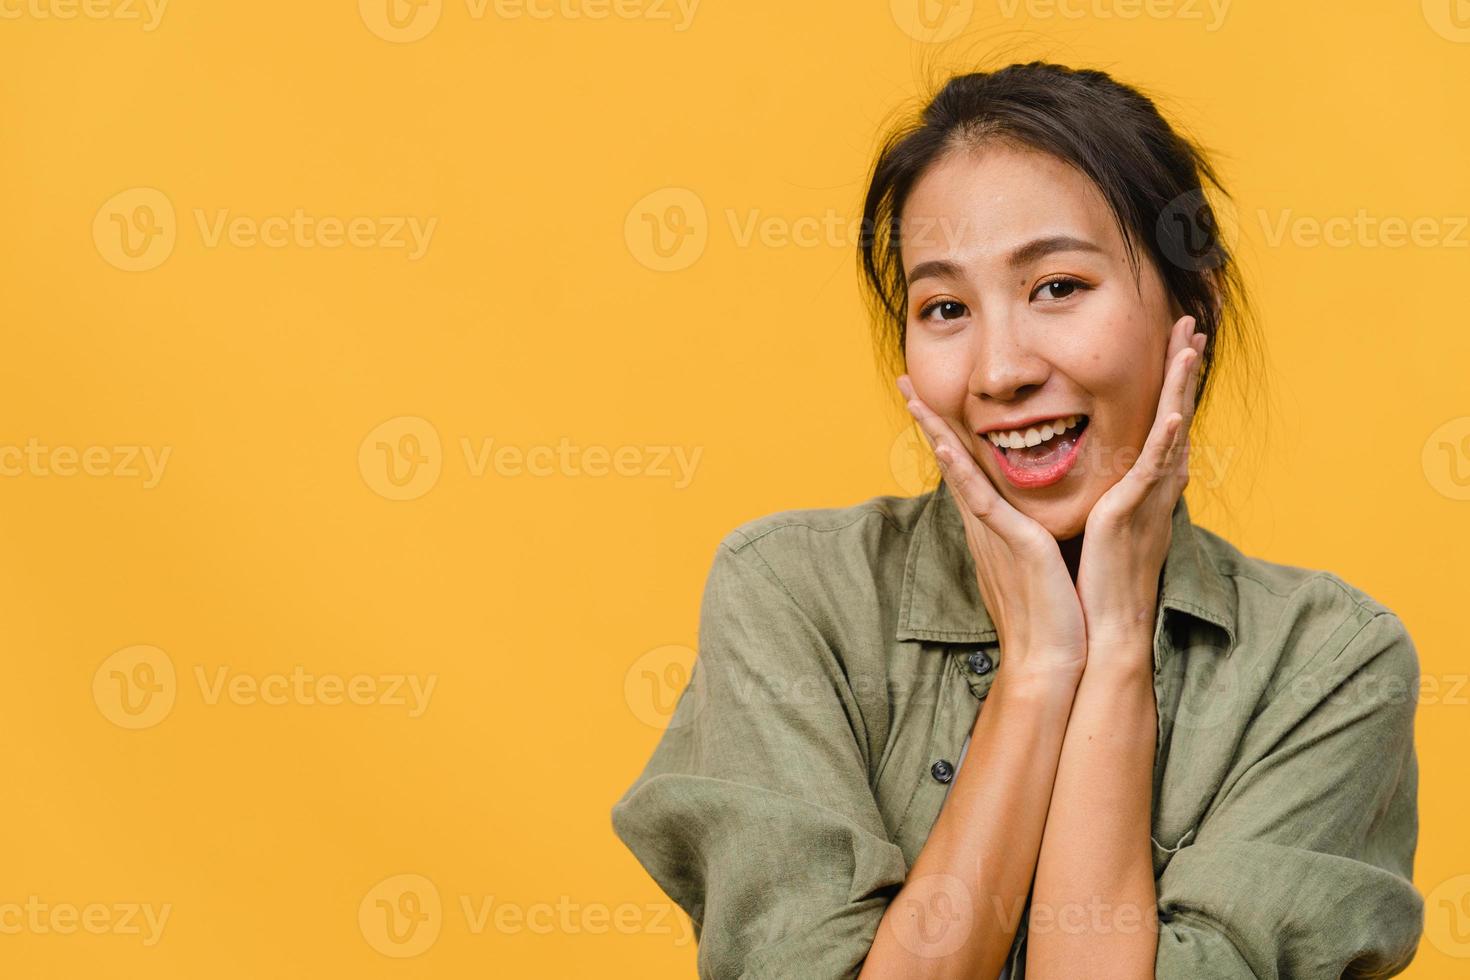 jeune femme asiatique à l'expression positive, sourire largement, vêtue de vêtements décontractés et regardant la caméra sur fond jaune. heureuse adorable femme heureuse se réjouit du succès. concept d'expression faciale. photo